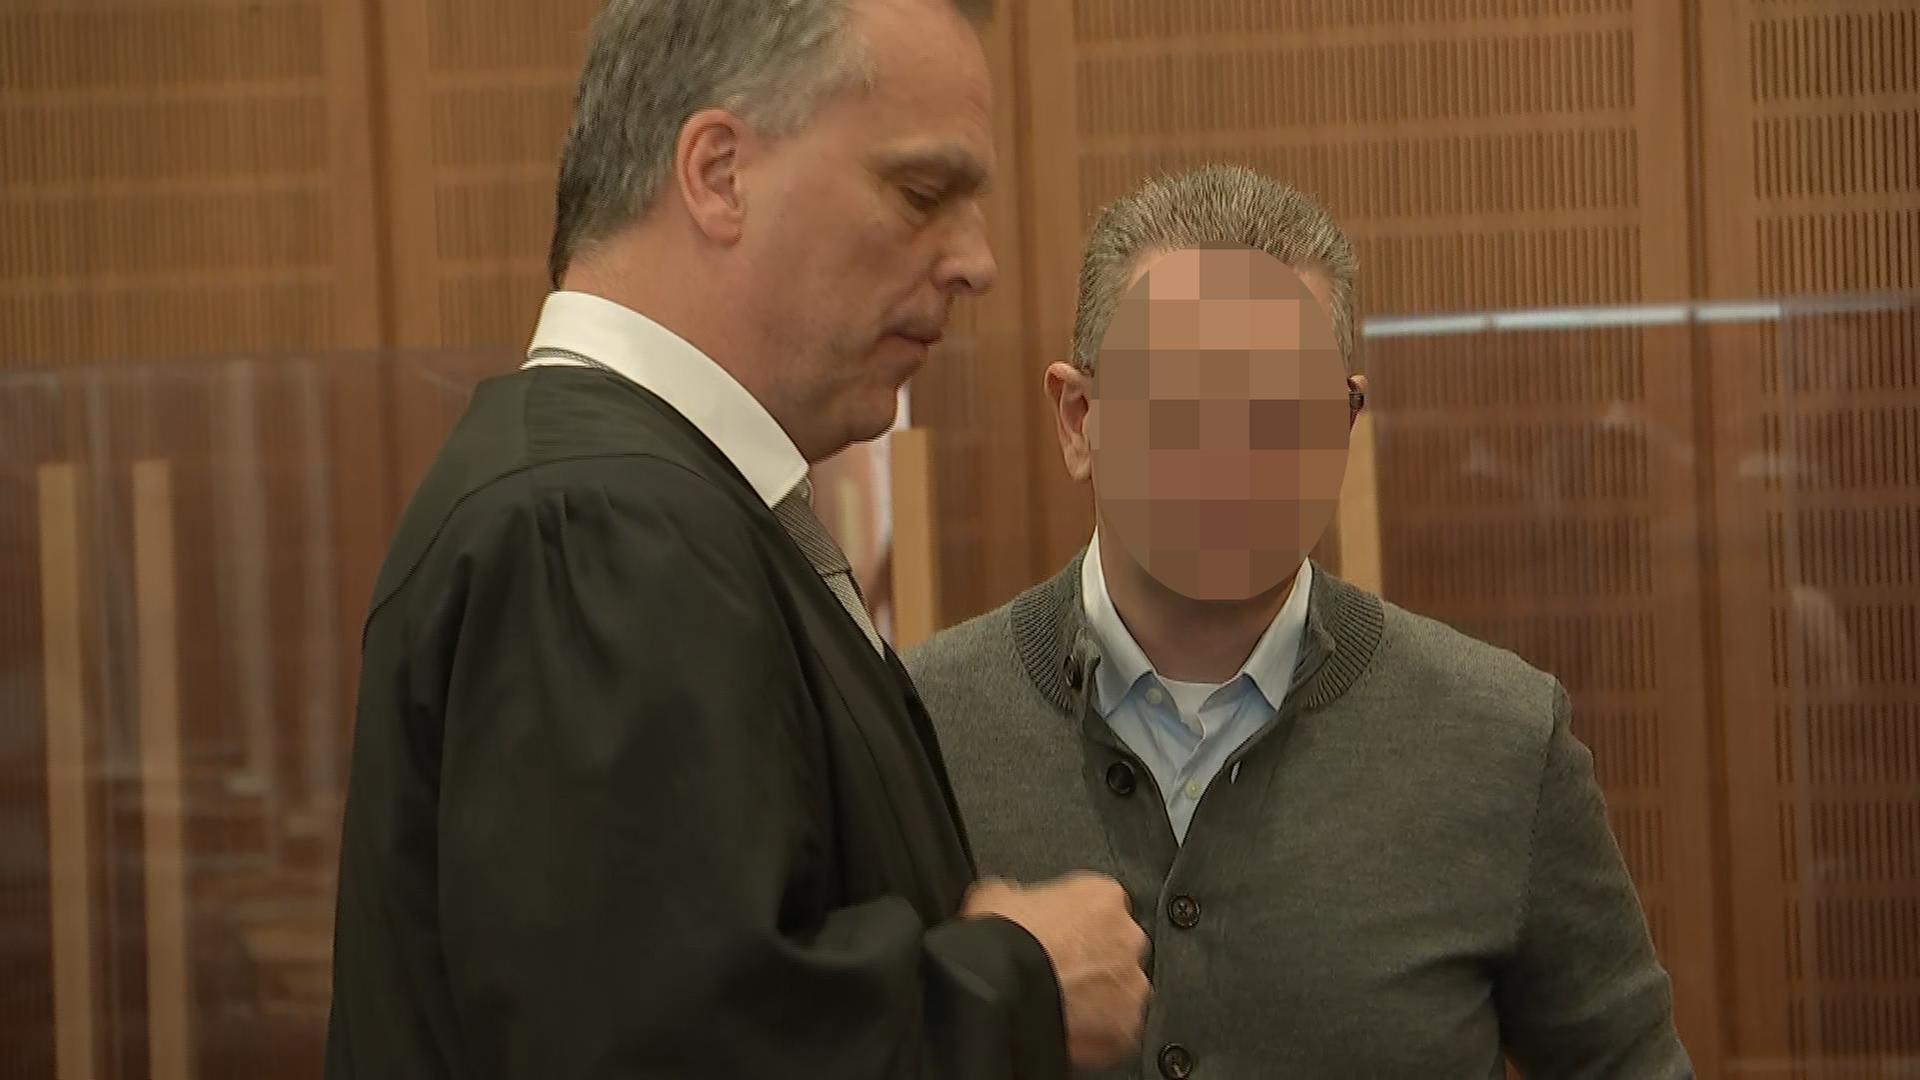 Korruptionsprozess: Frueherer Frankfurter Oberstaatsanwalt zu sechs Jahren Haft verurteilt